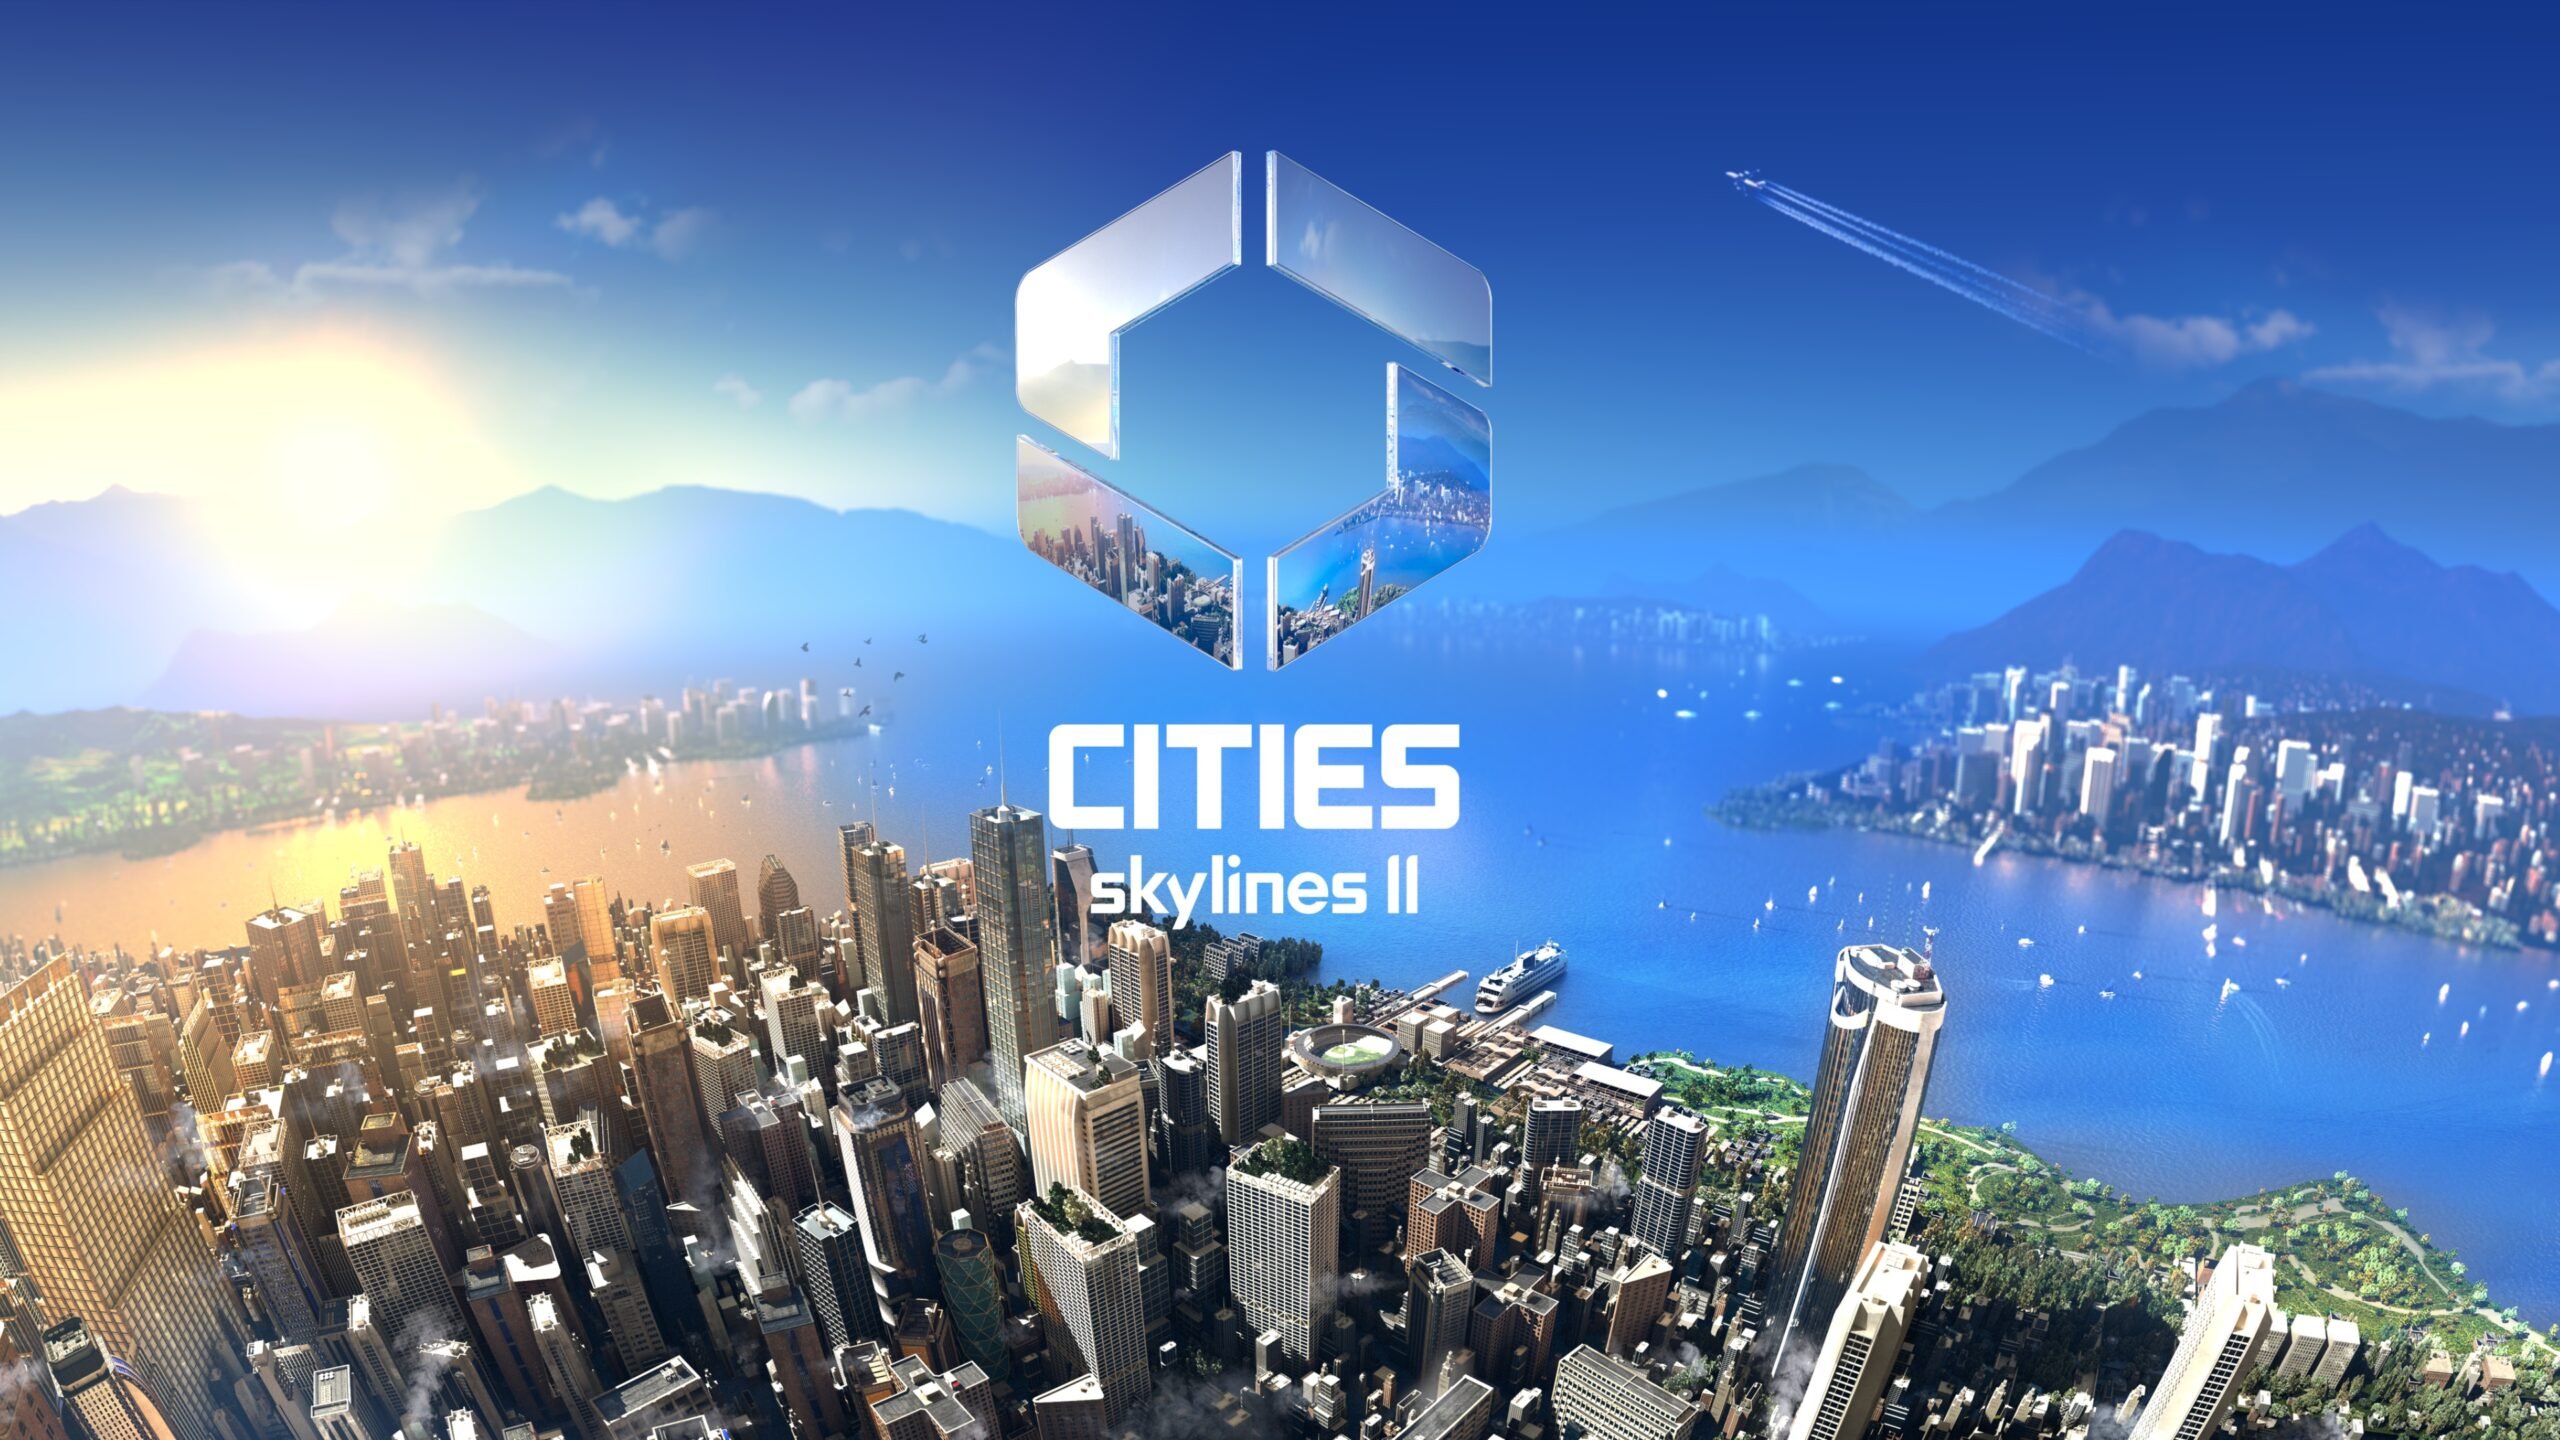 Best Cities Skylines II Wallpaper [ HQ ]